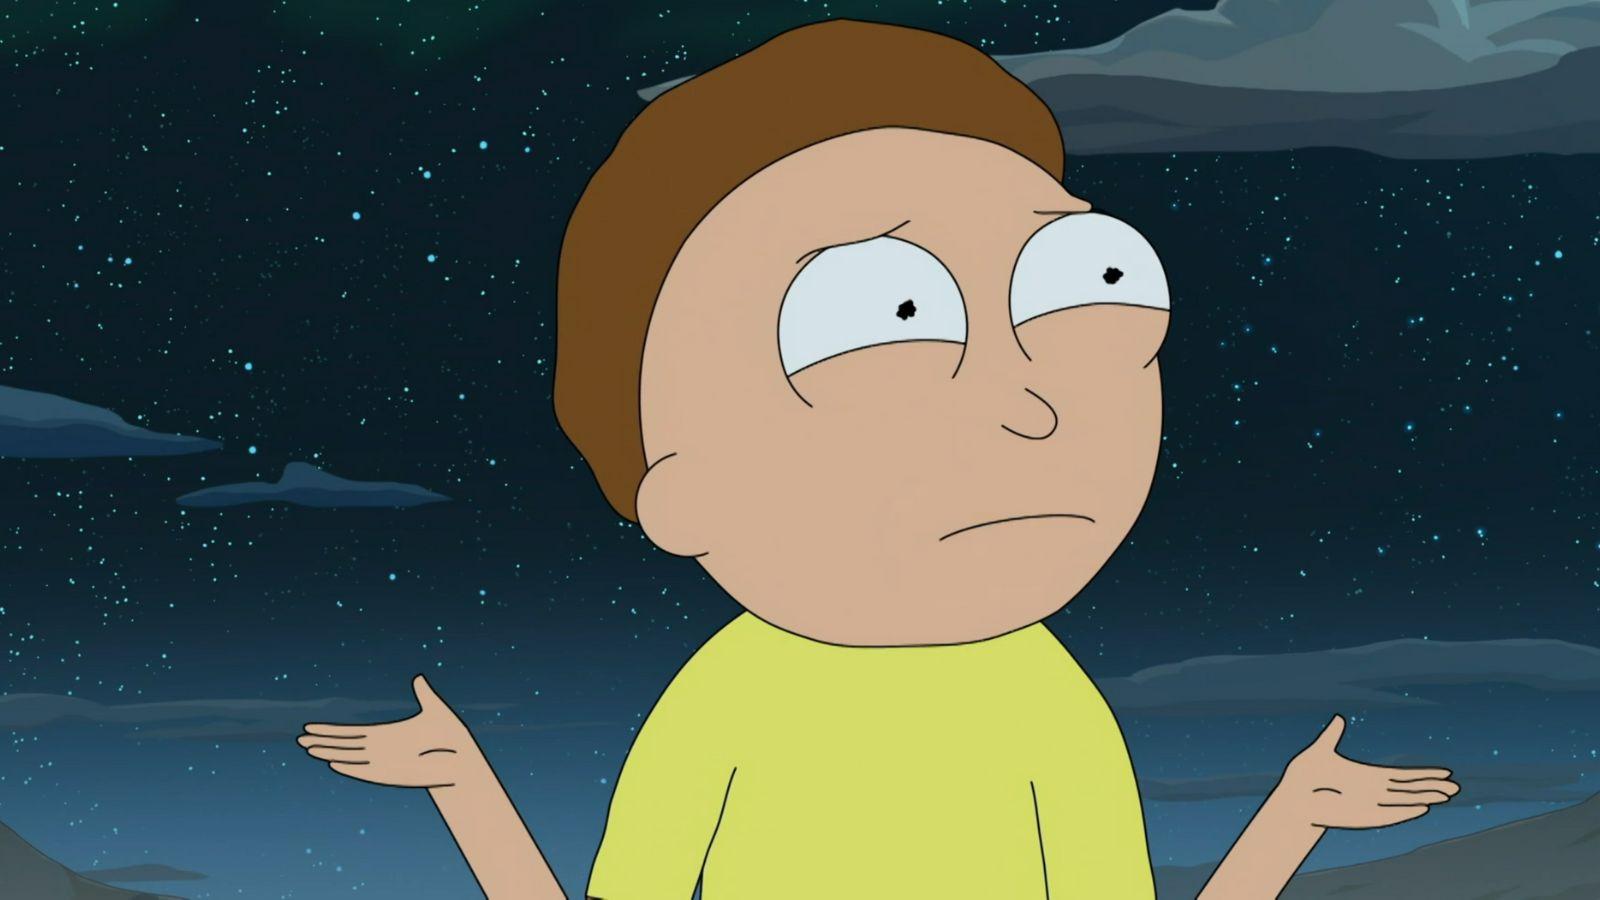 Rick et Morty (série) : Saisons, Episodes, Acteurs, Actualités